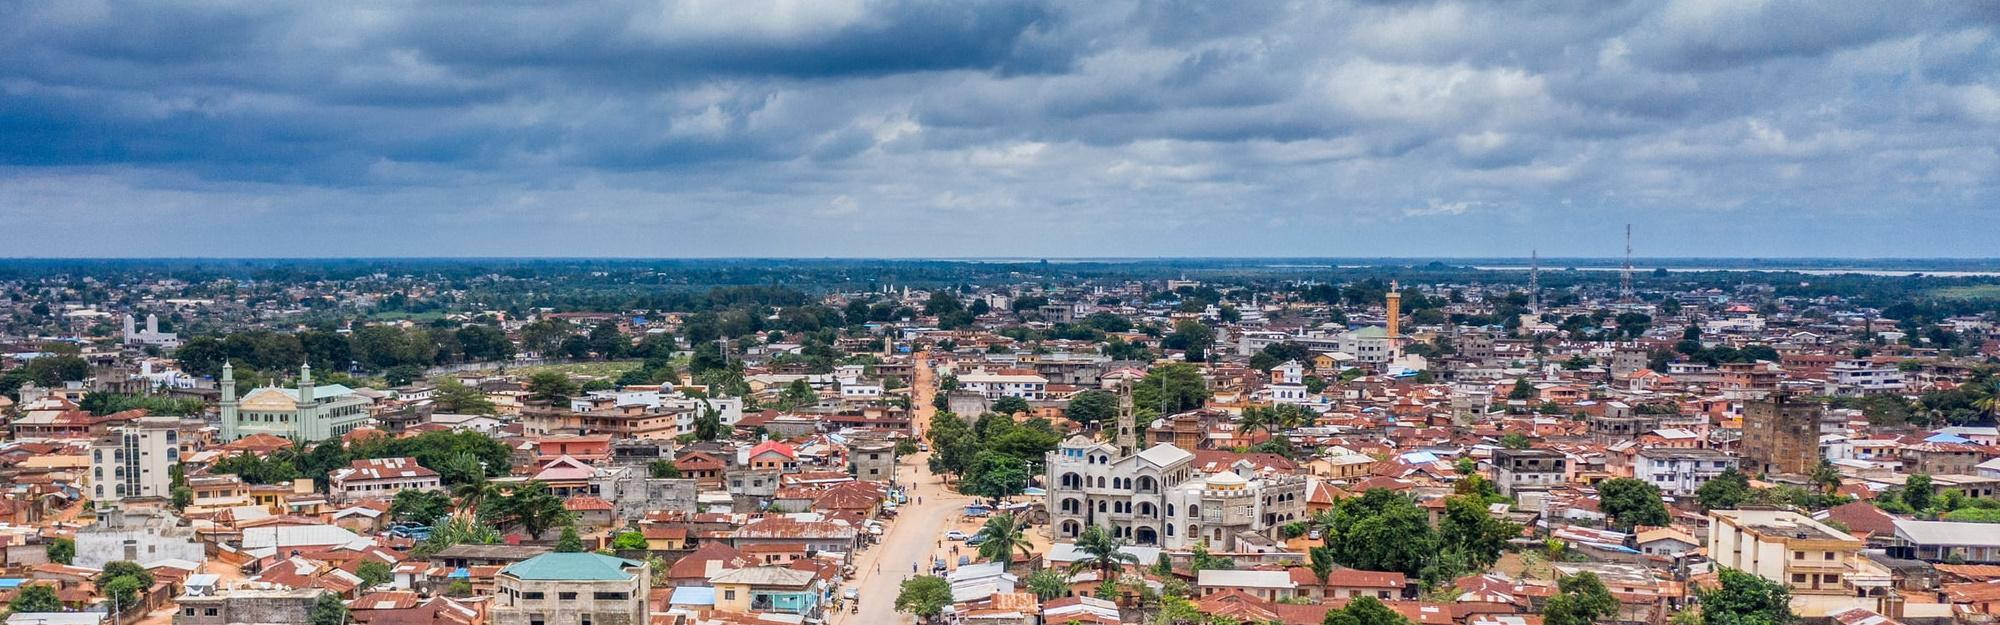 Benin In Panorama Wallpaper